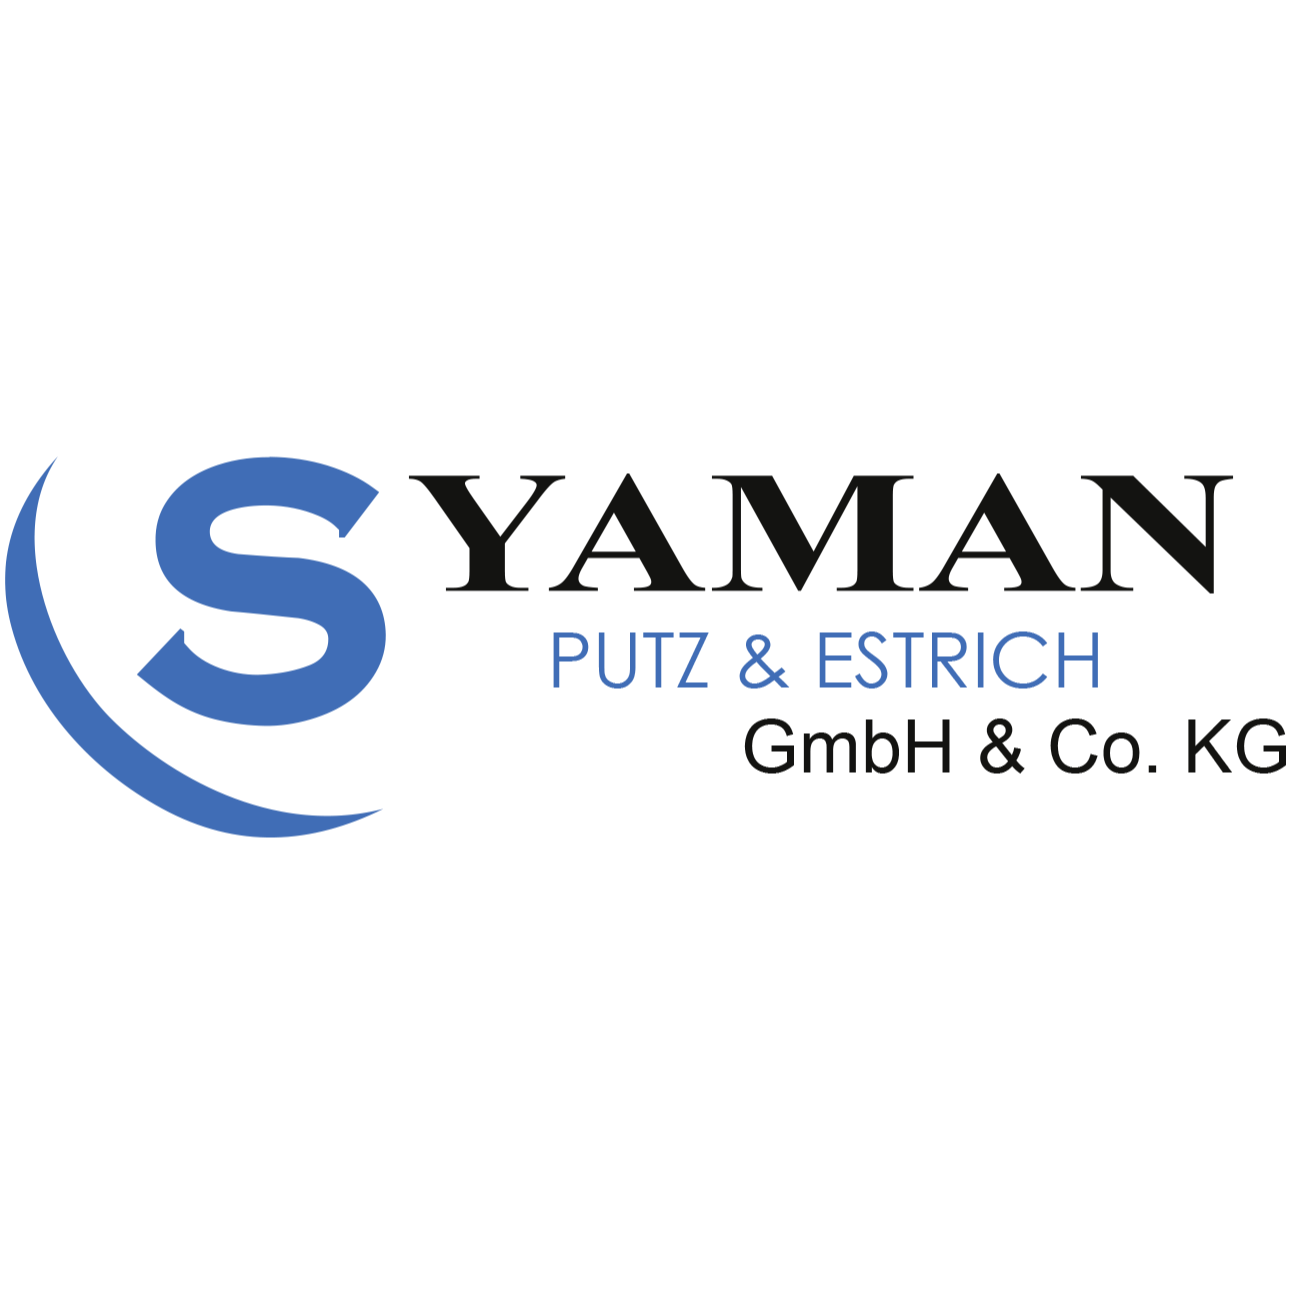 S. Yaman Putz & Estrich GmbH & Co. KG in Hüttenberg - Logo